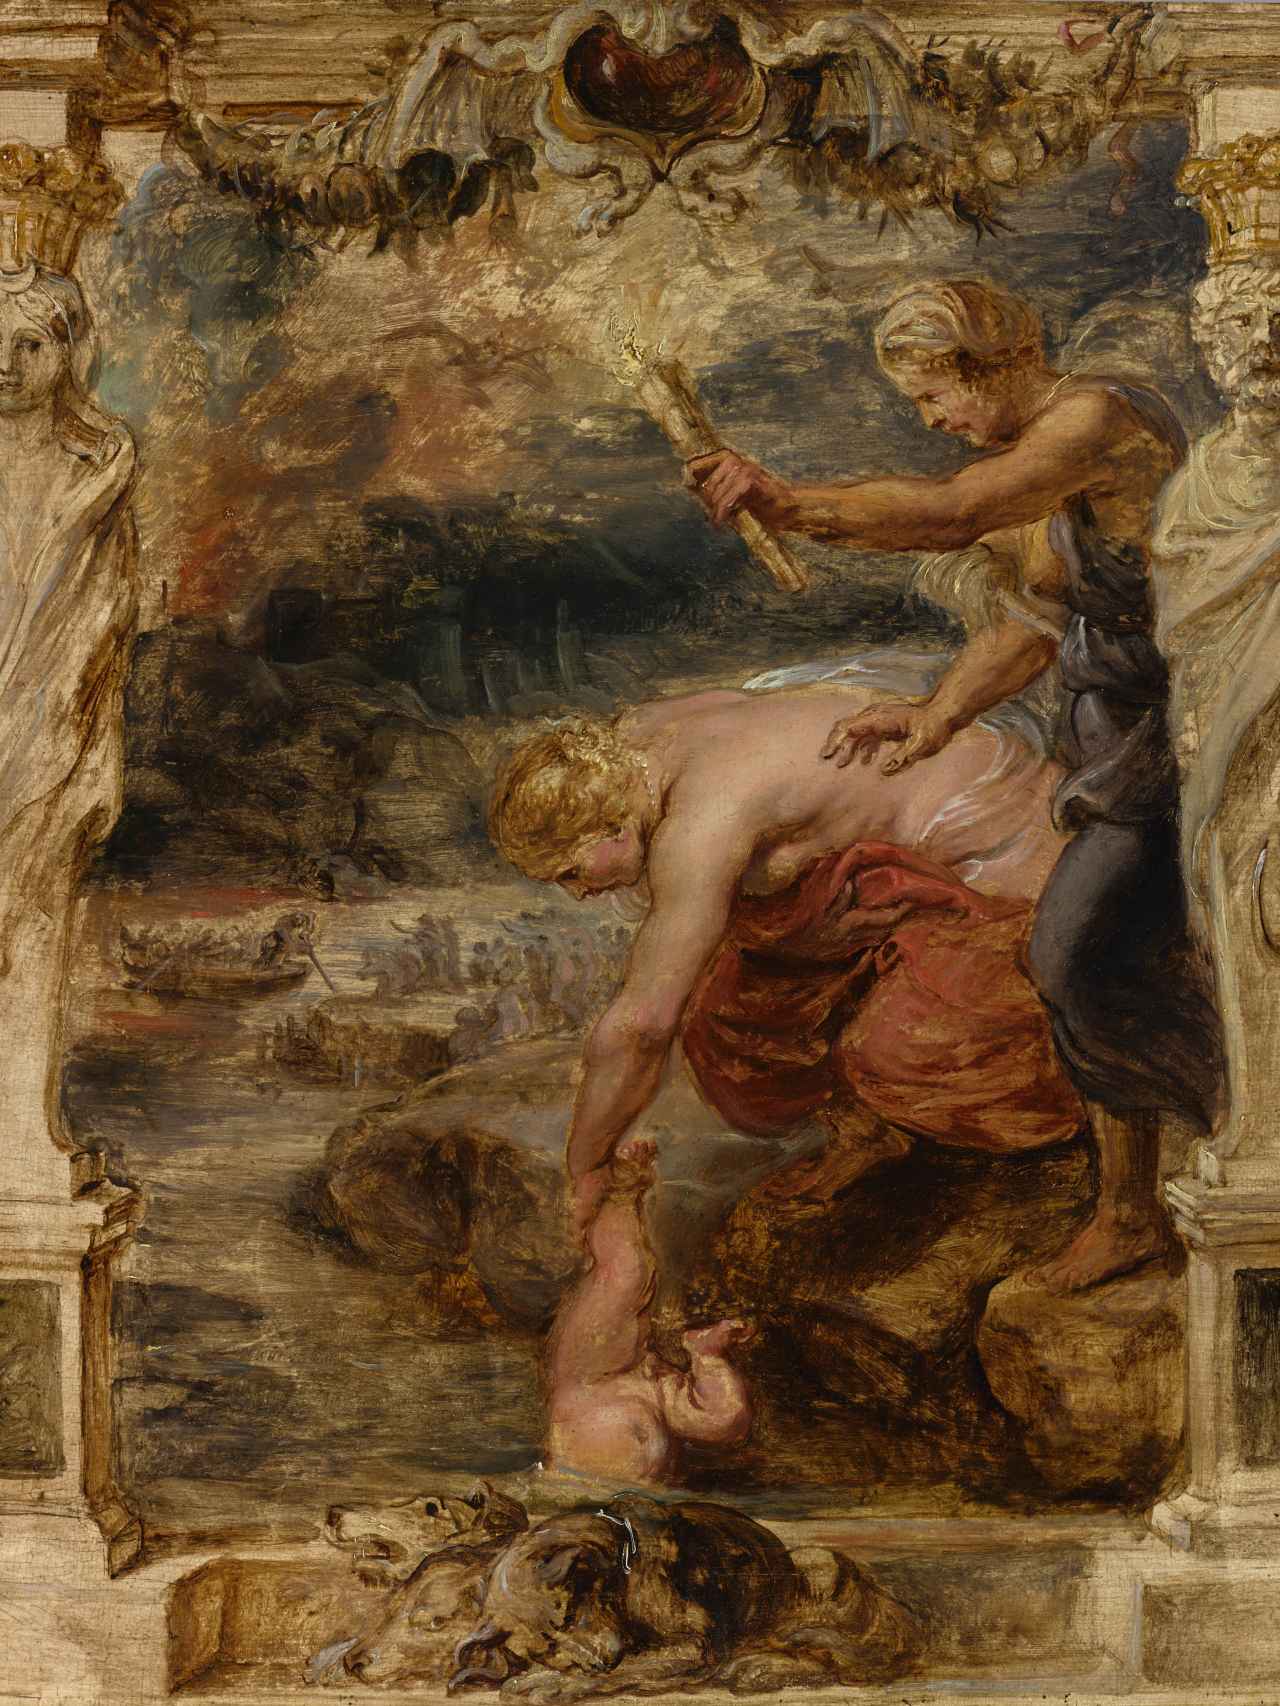 Tetis introduciendo al pequeño Aquiles en el río Estigia, boceto de Rubens, 1635.